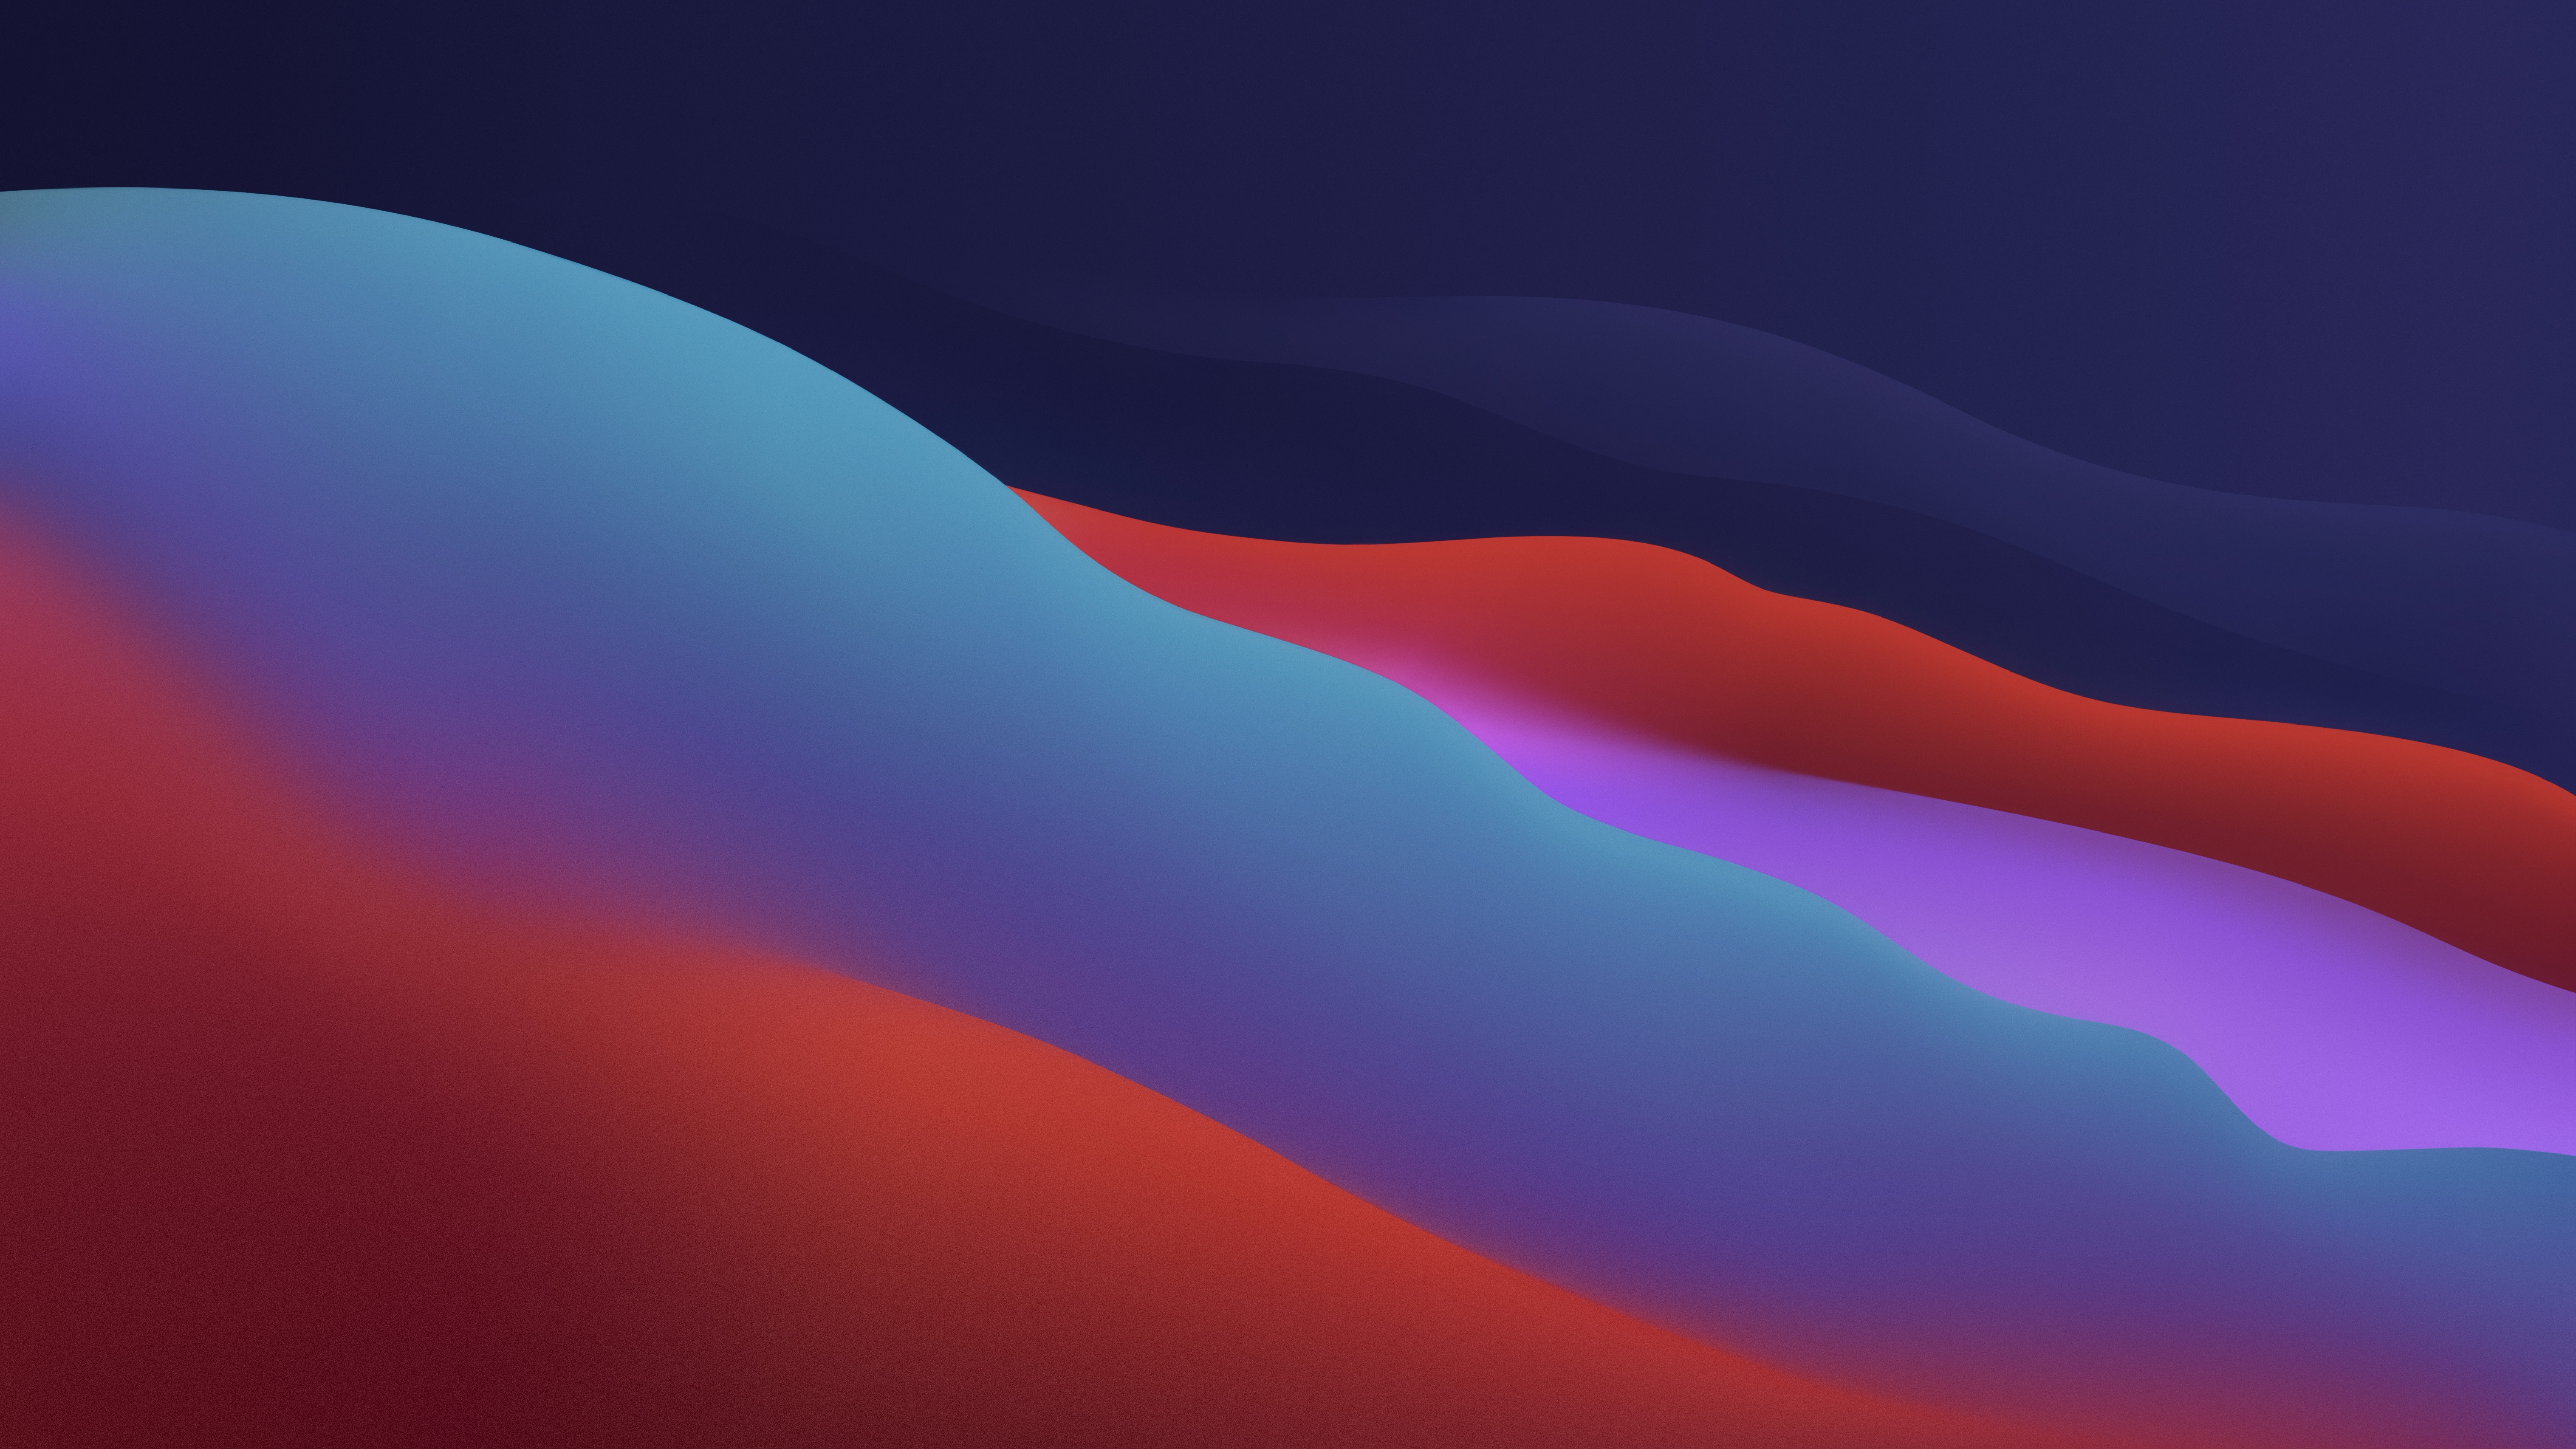 Sắm ngay chiếc máy tính Apple và trang trí cho nó với ảnh nền macOS Big Sur 4K. Với các tone màu gradient chất lượng, chất lỏng, #1432 sẽ làm cho bạn yêu thích và muốn trải nghiệm ngay.